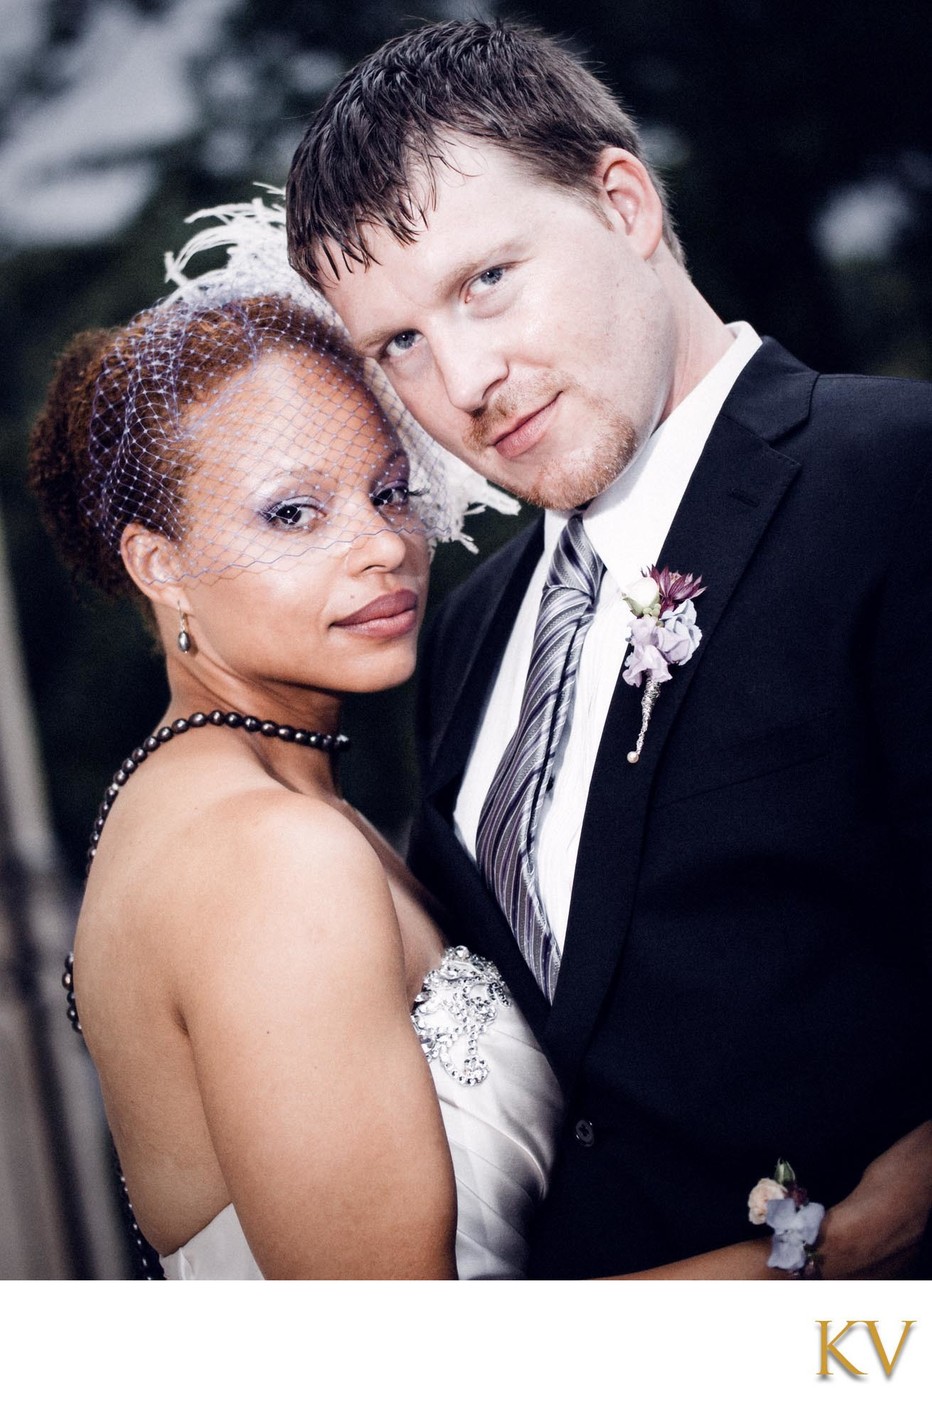 Boneza & Daryl - Chateau Mcely wedding